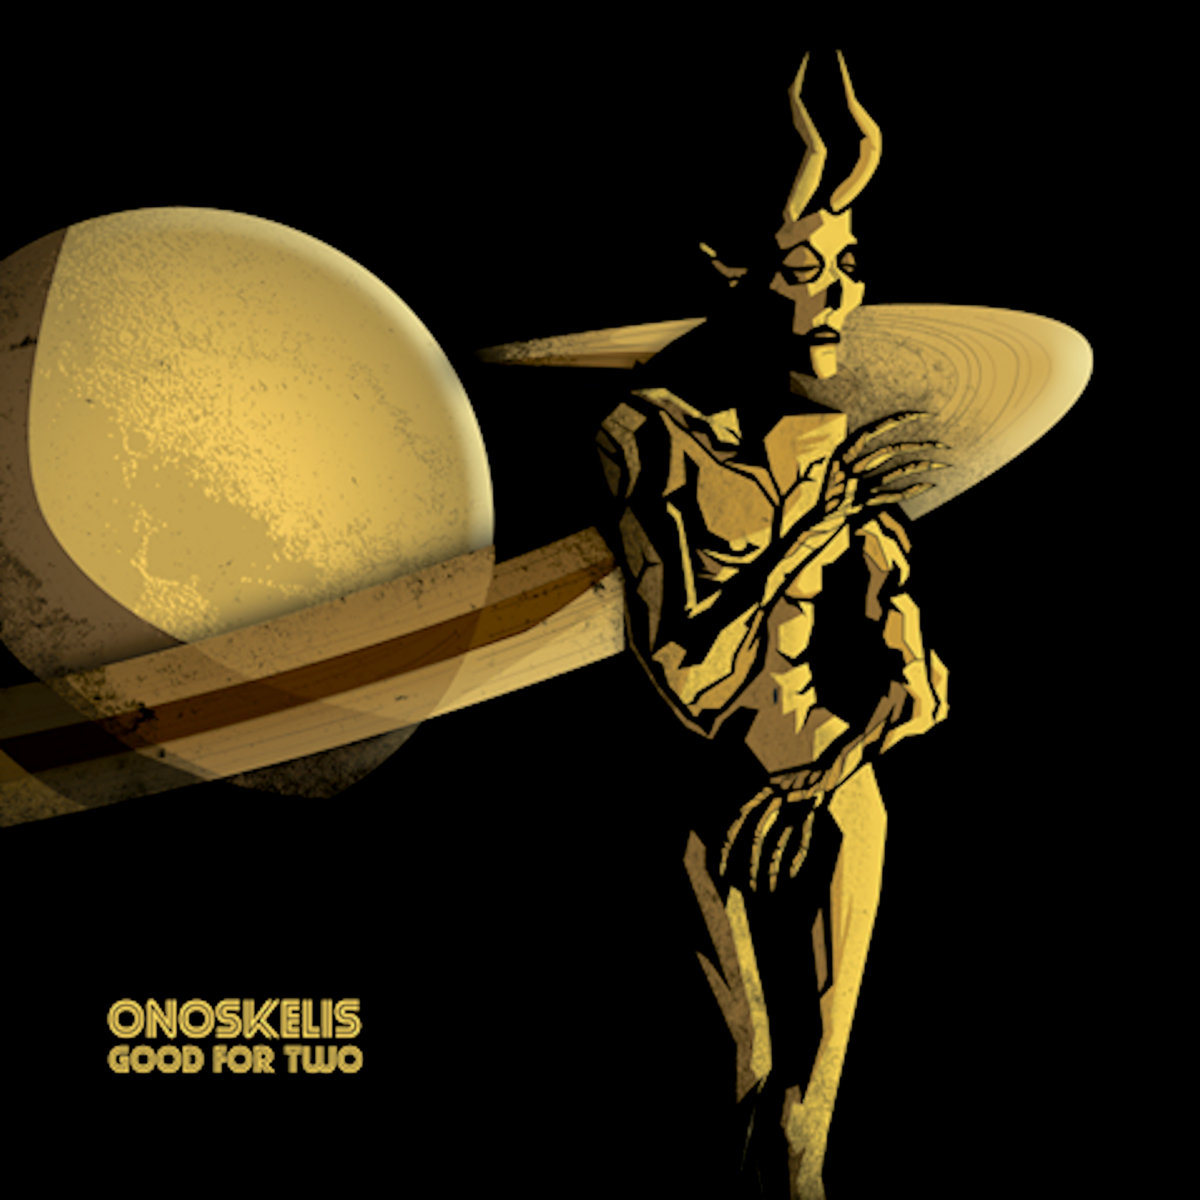 Onoskelis - Good for Two (Digipak) - CD